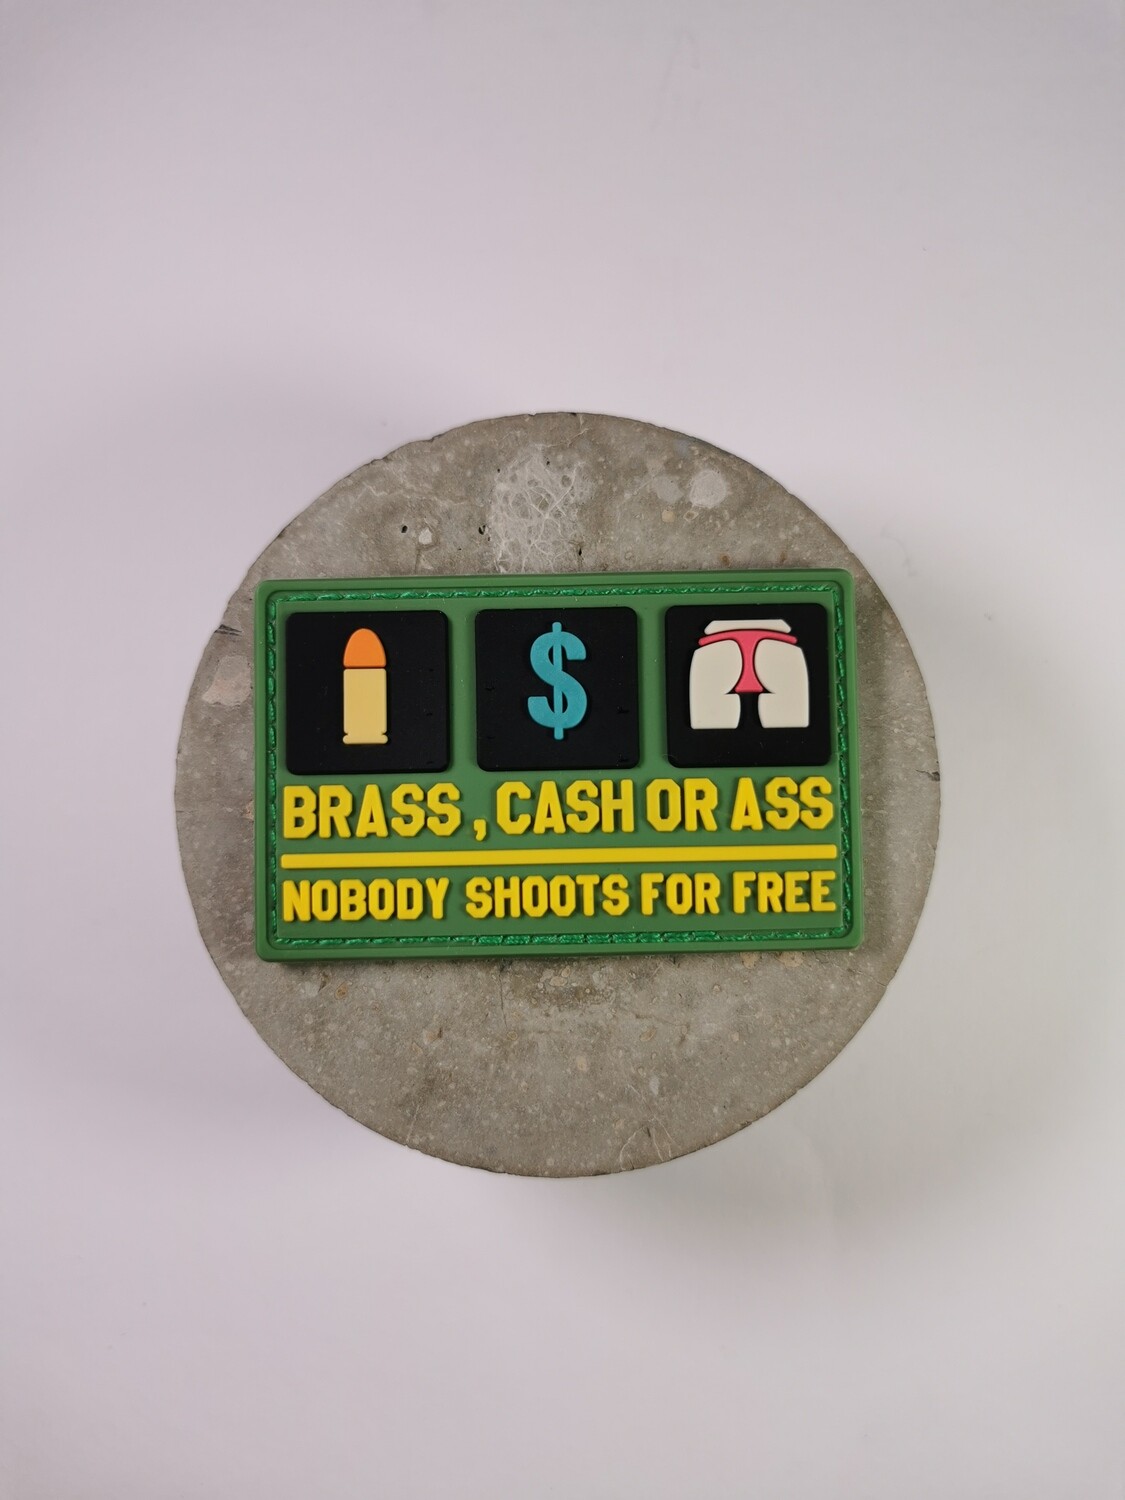 Brass, cash or ass